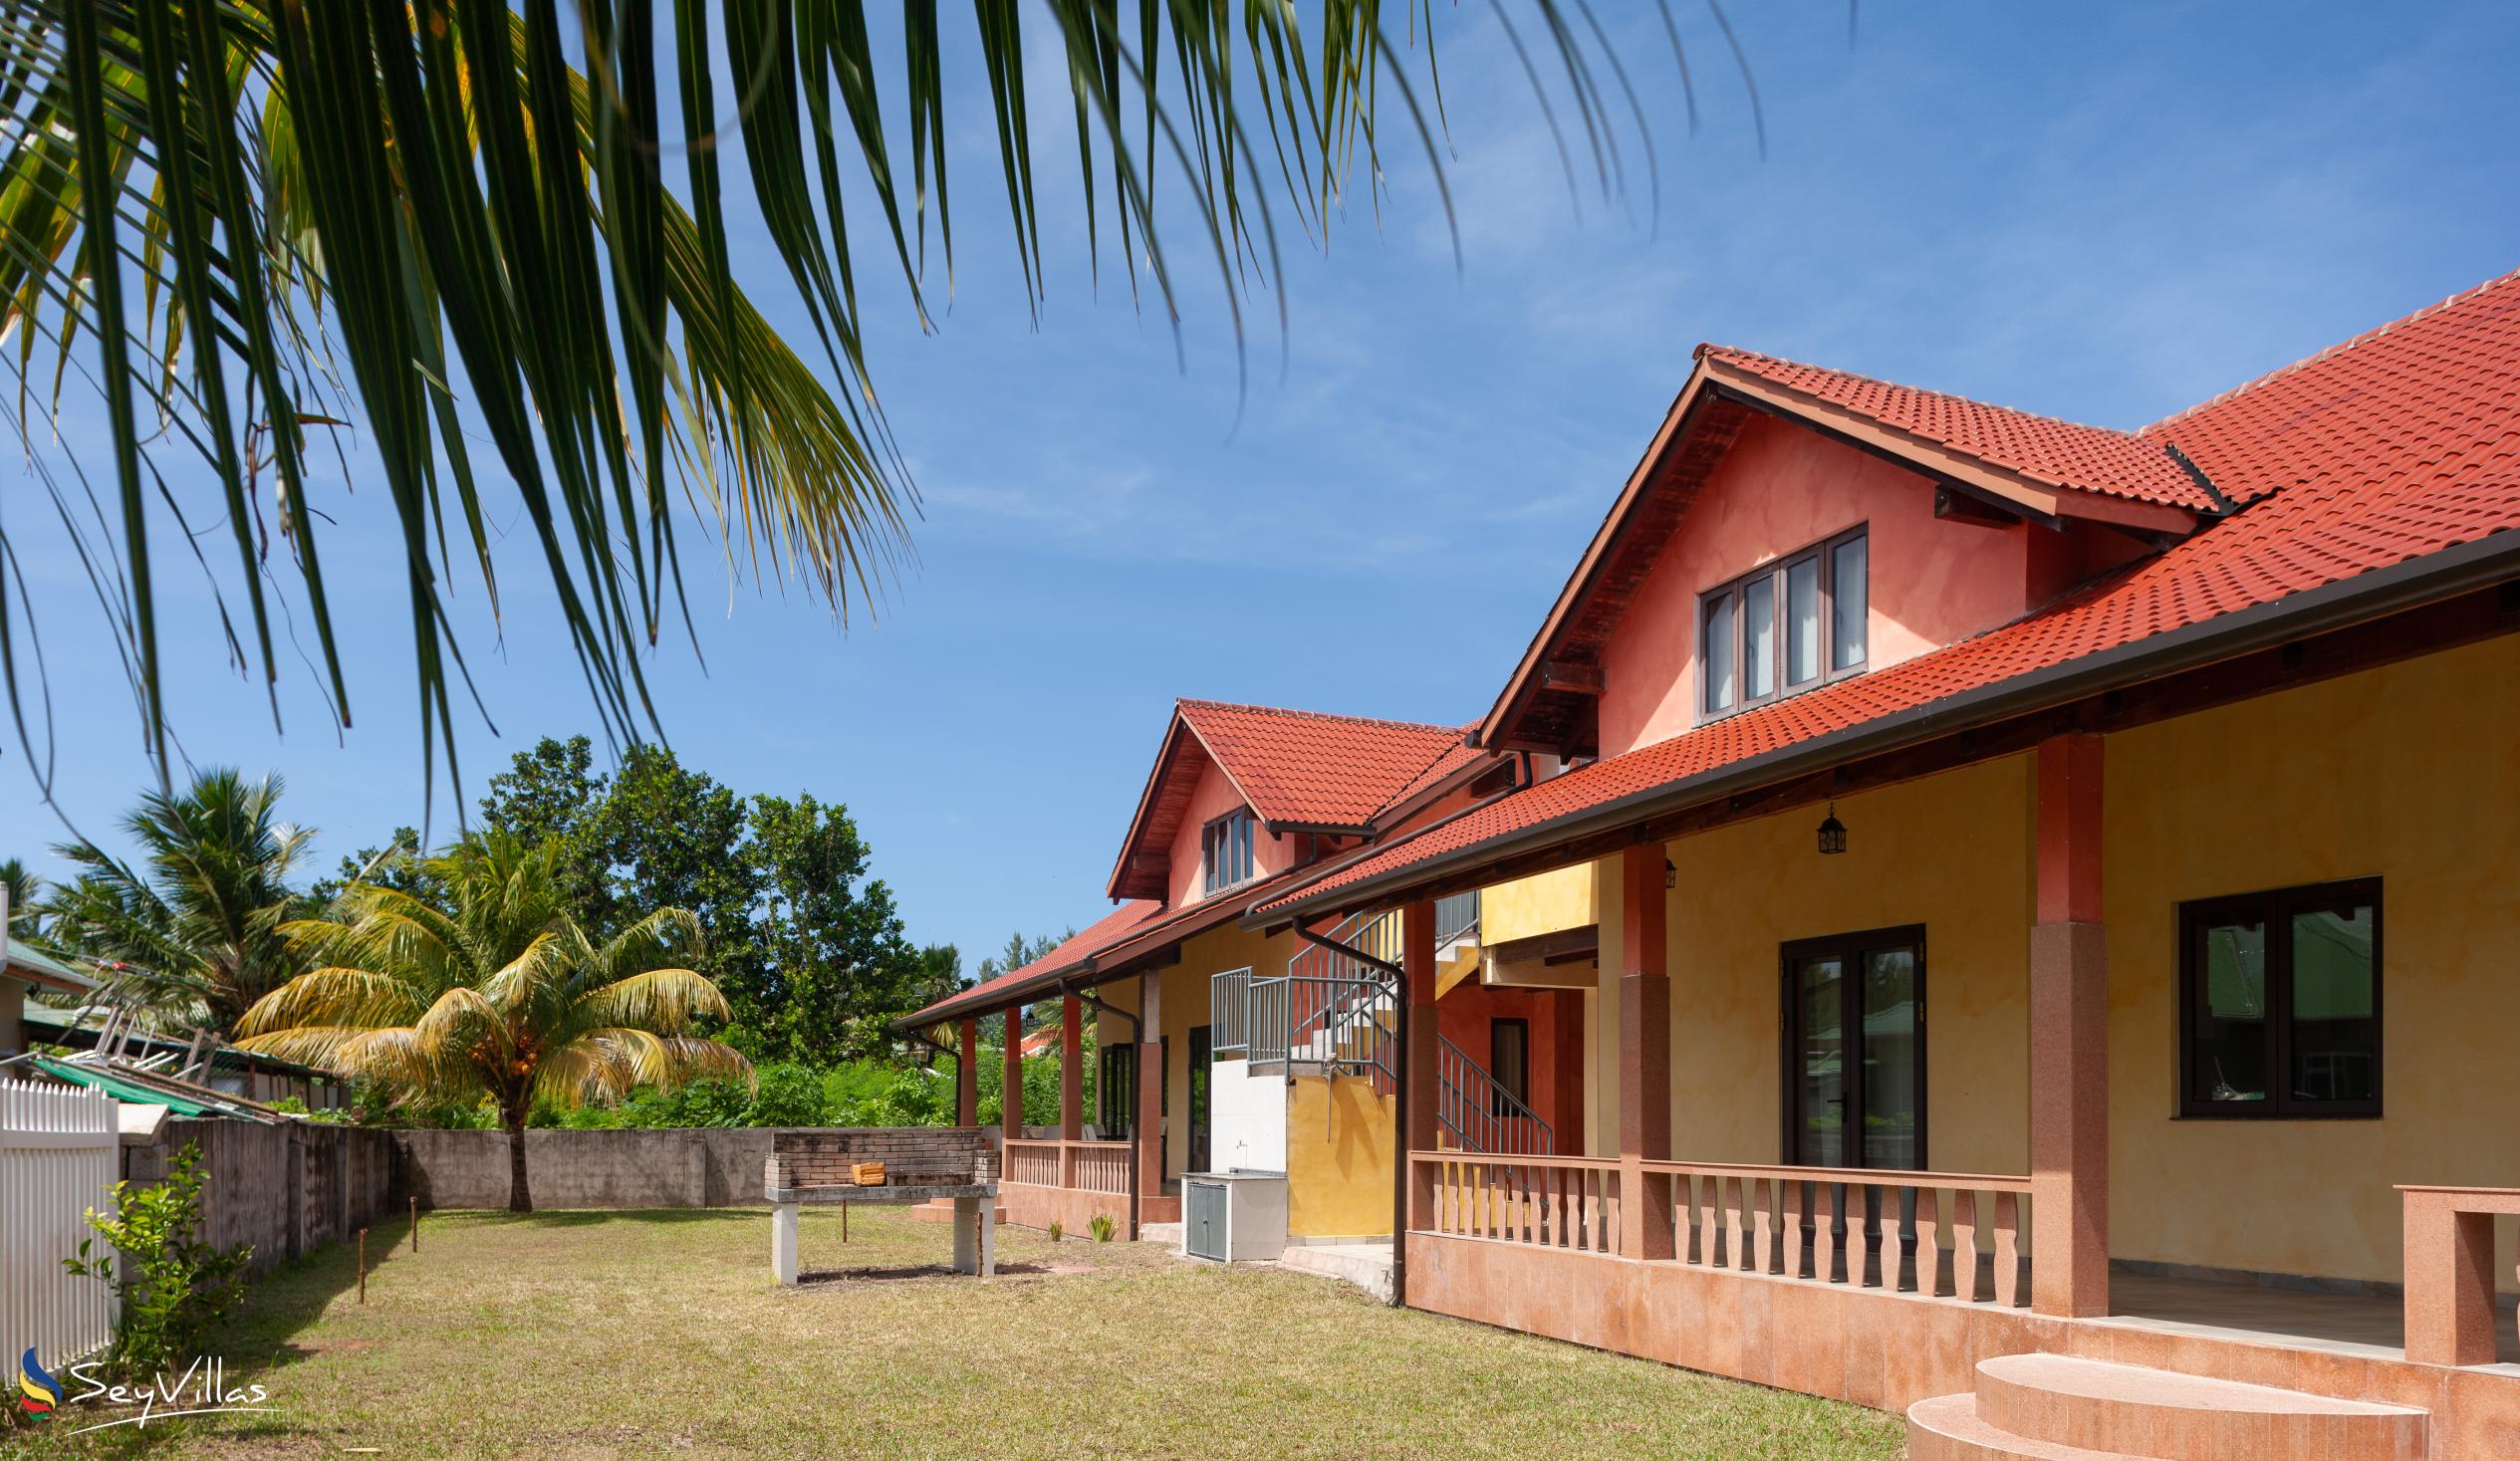 Foto 1: Villa Sole - Esterno - Praslin (Seychelles)